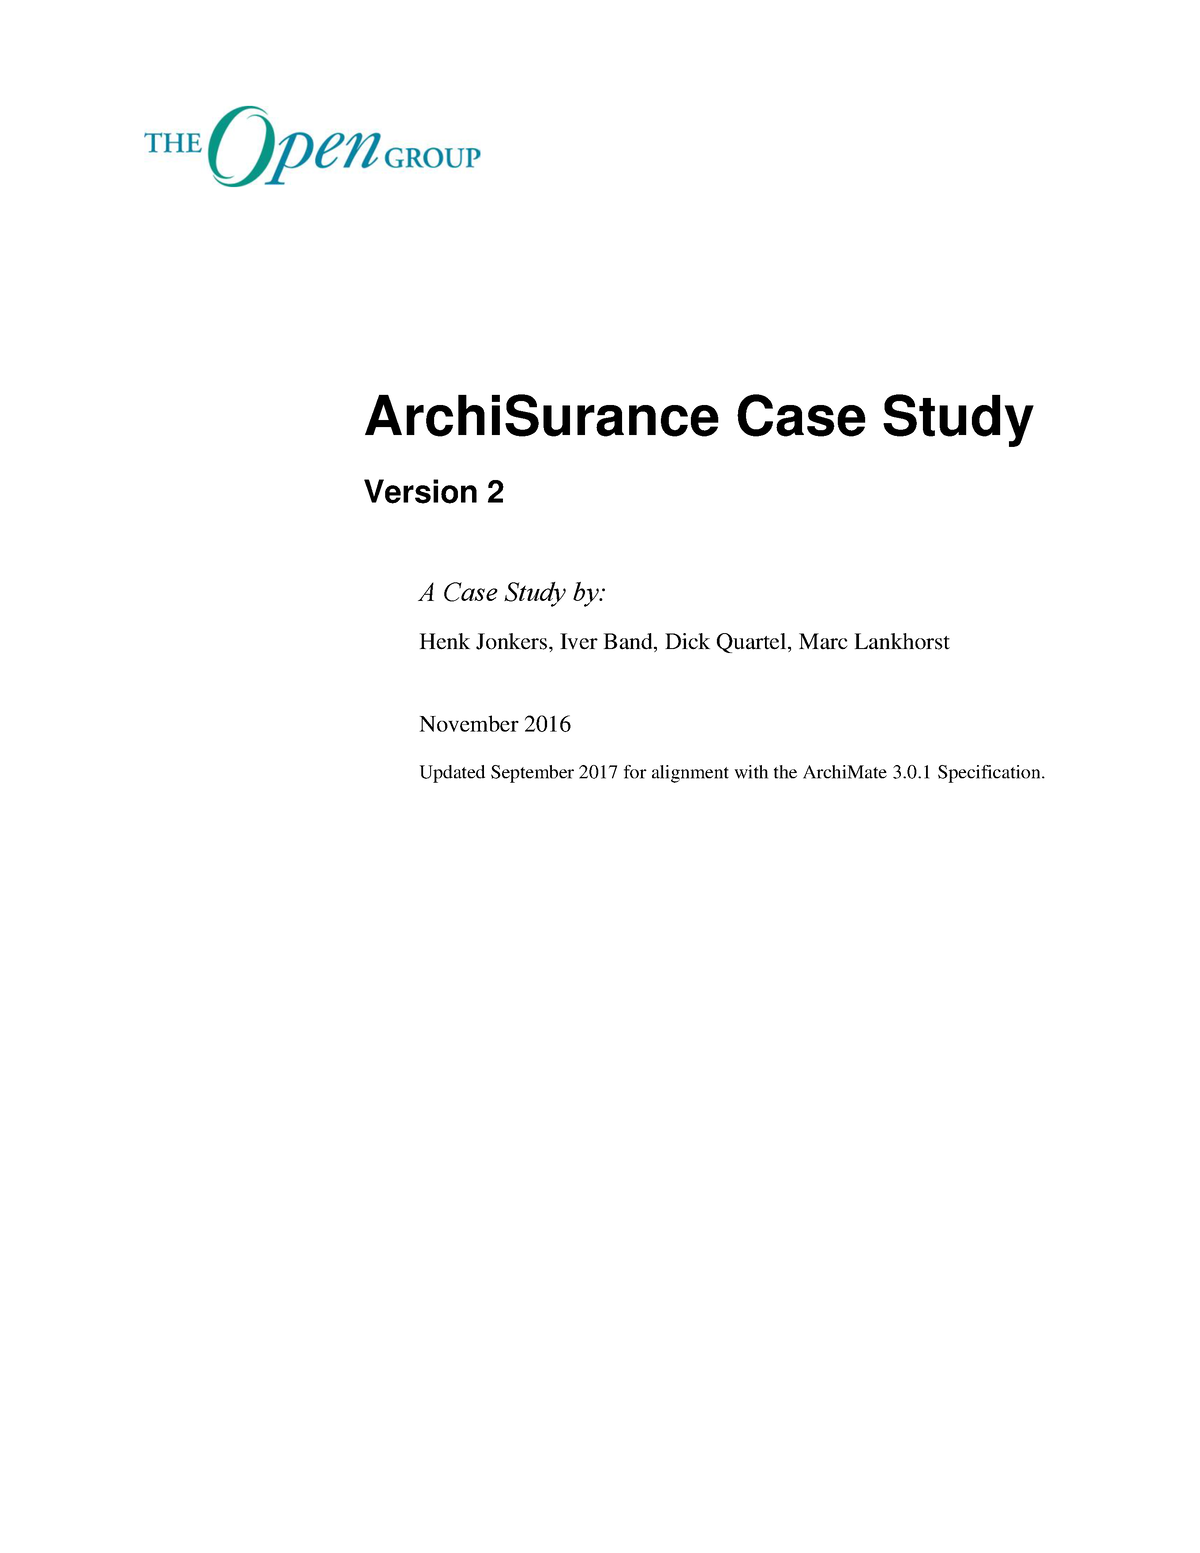 archisurance case study version 2